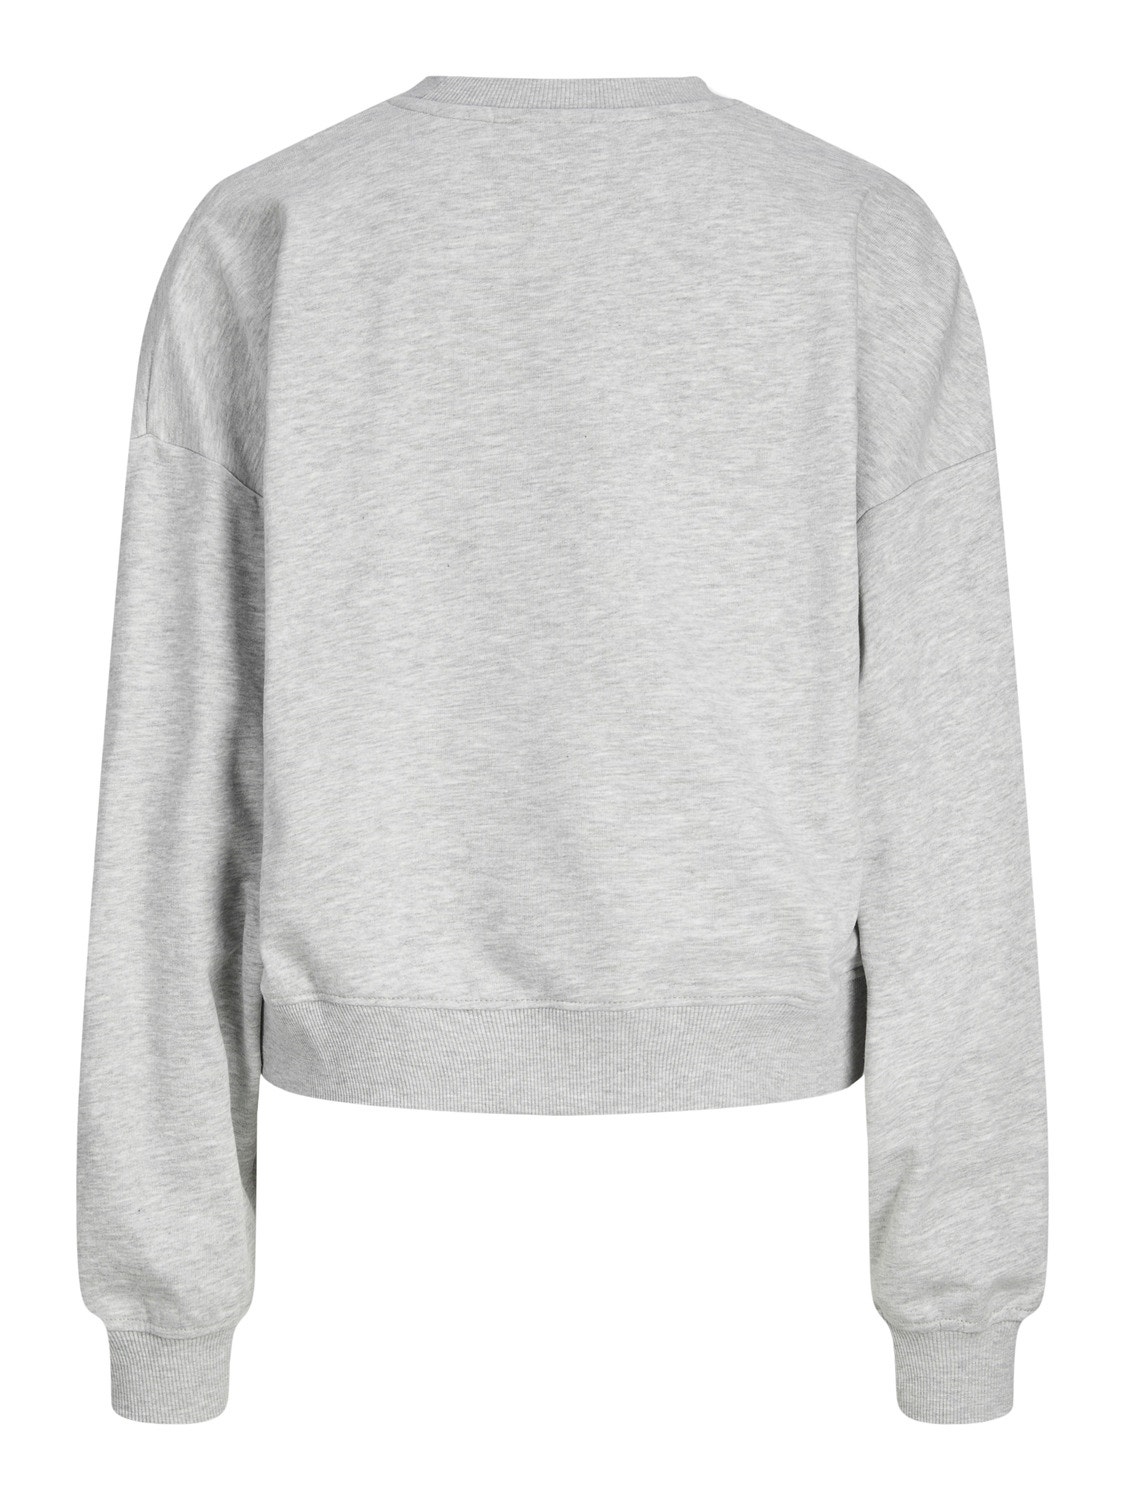 JJXX JXRILEY Crew neck Sweatshirt -Light Grey Melange - 12248650